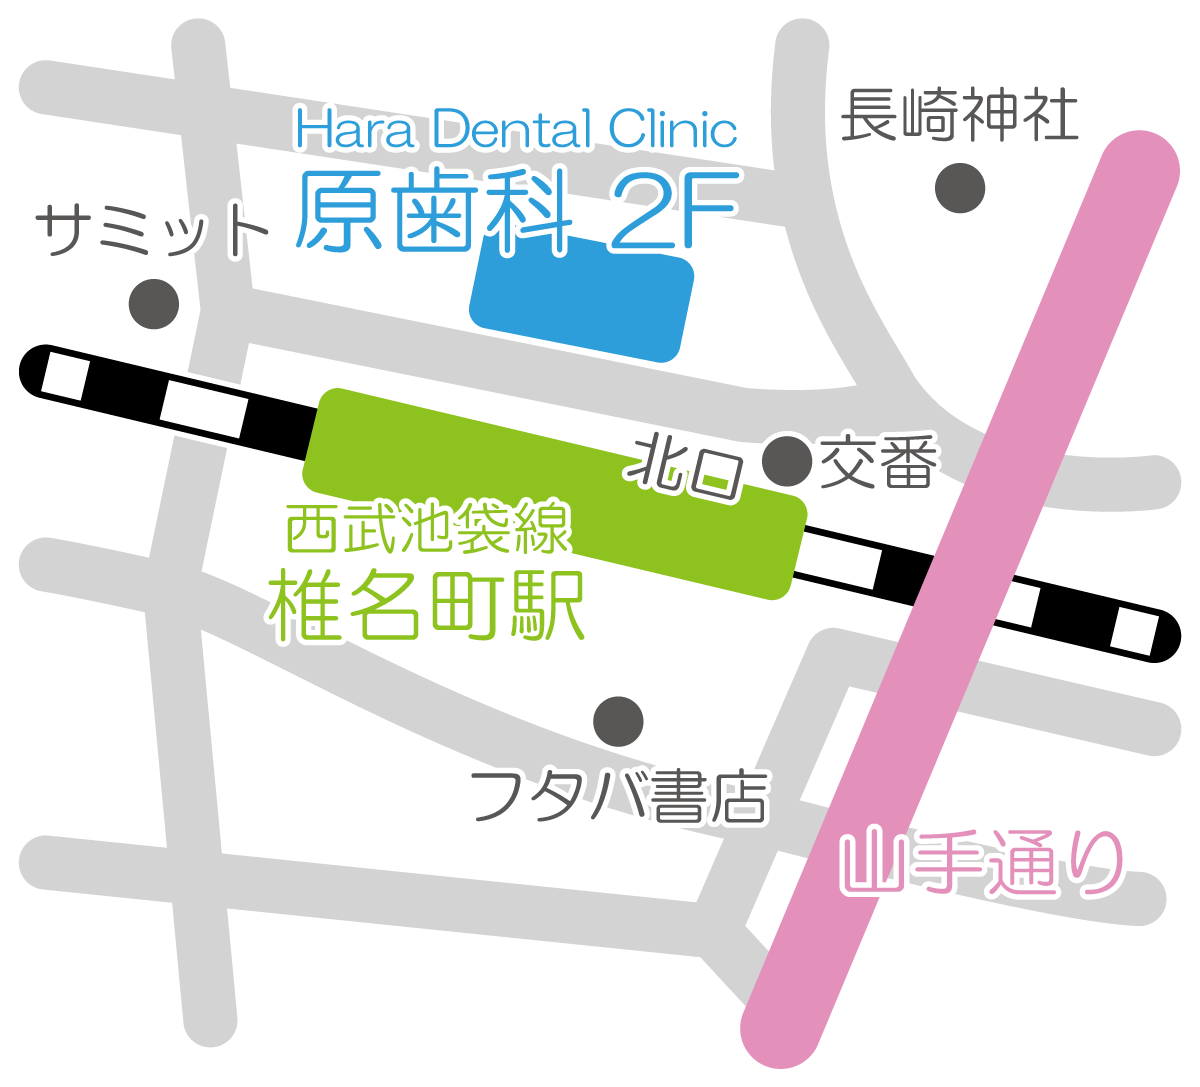 椎名町 原歯科医院 デンタルケアクリニック の地図